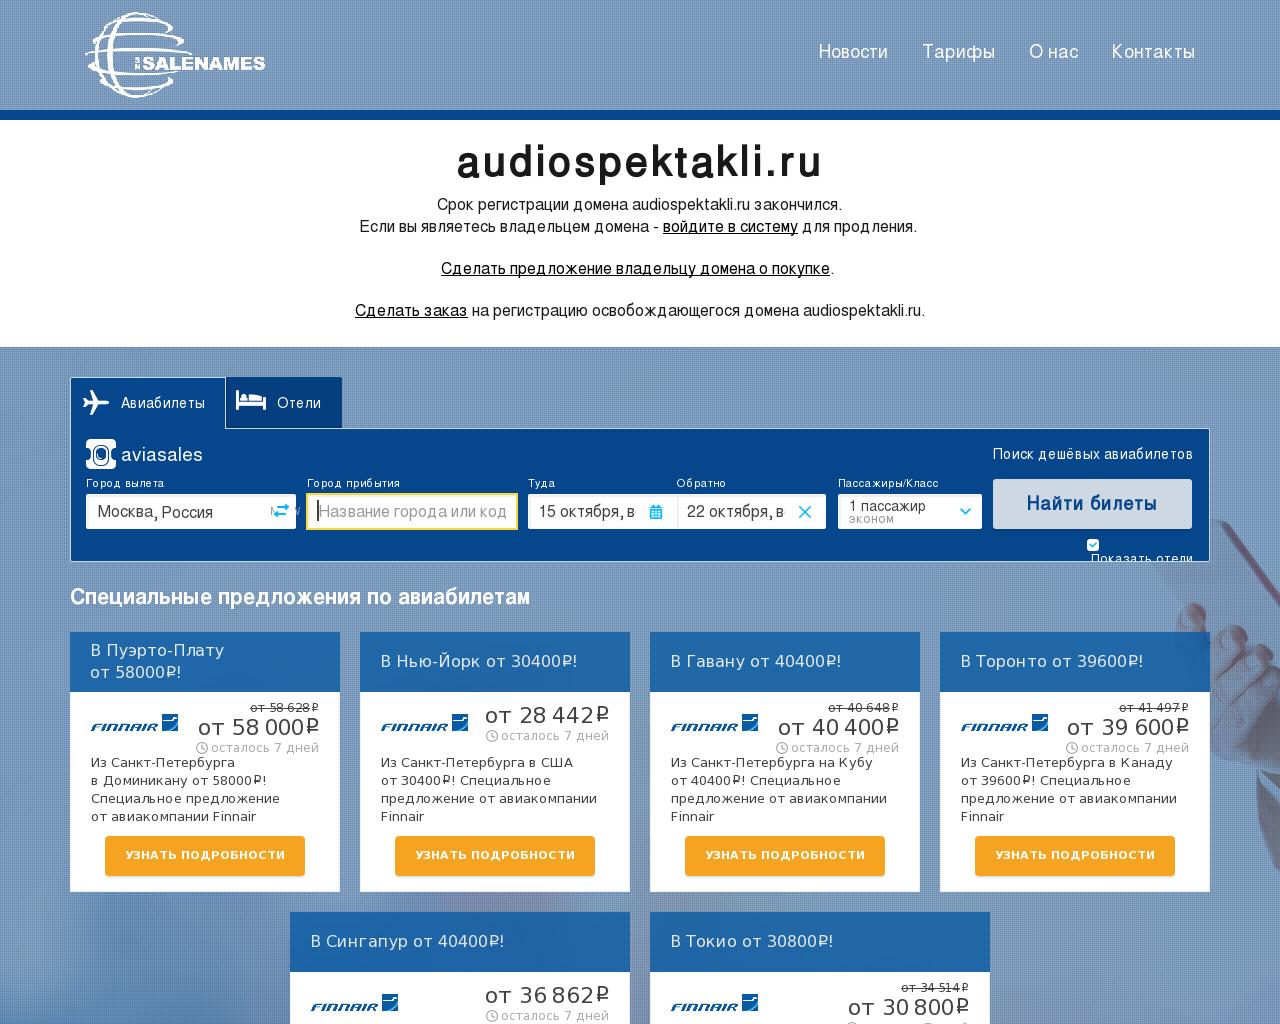 Изображение сайта audiospektakli.ru в разрешении 1280x1024